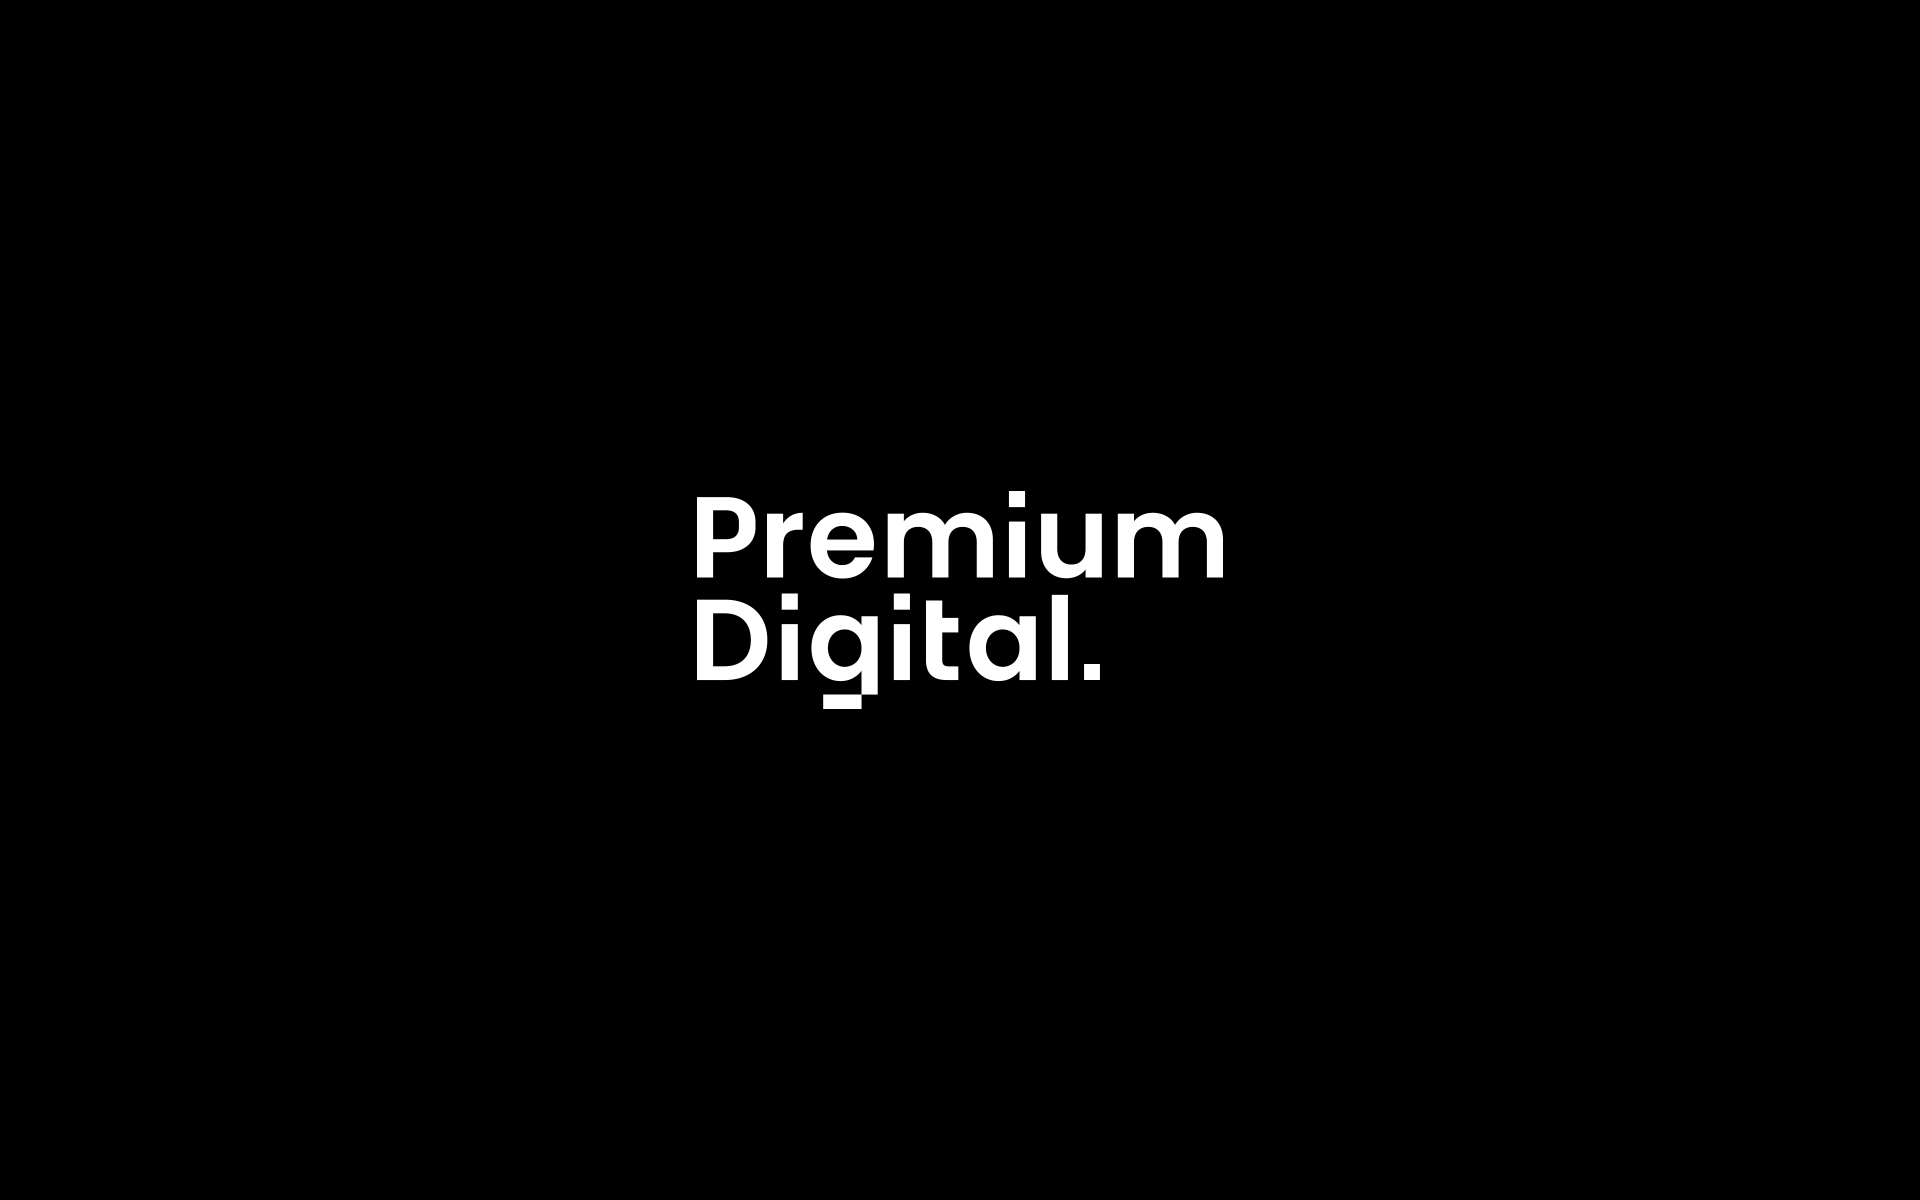 Premium Digital